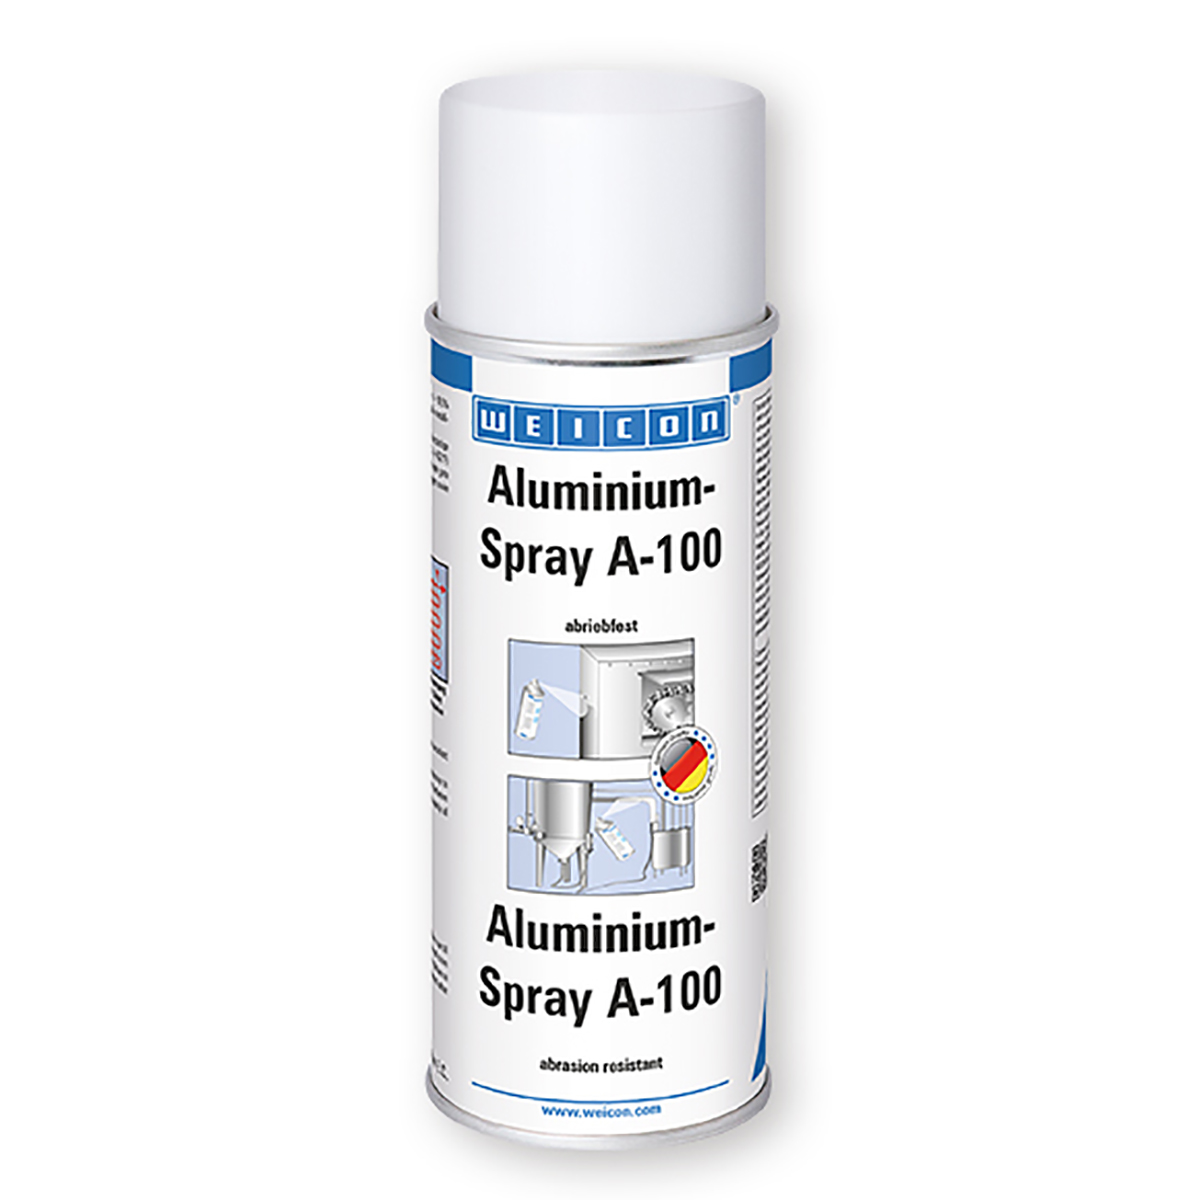 Weicon Aluminium Spray A100 – Abrasion Resistant